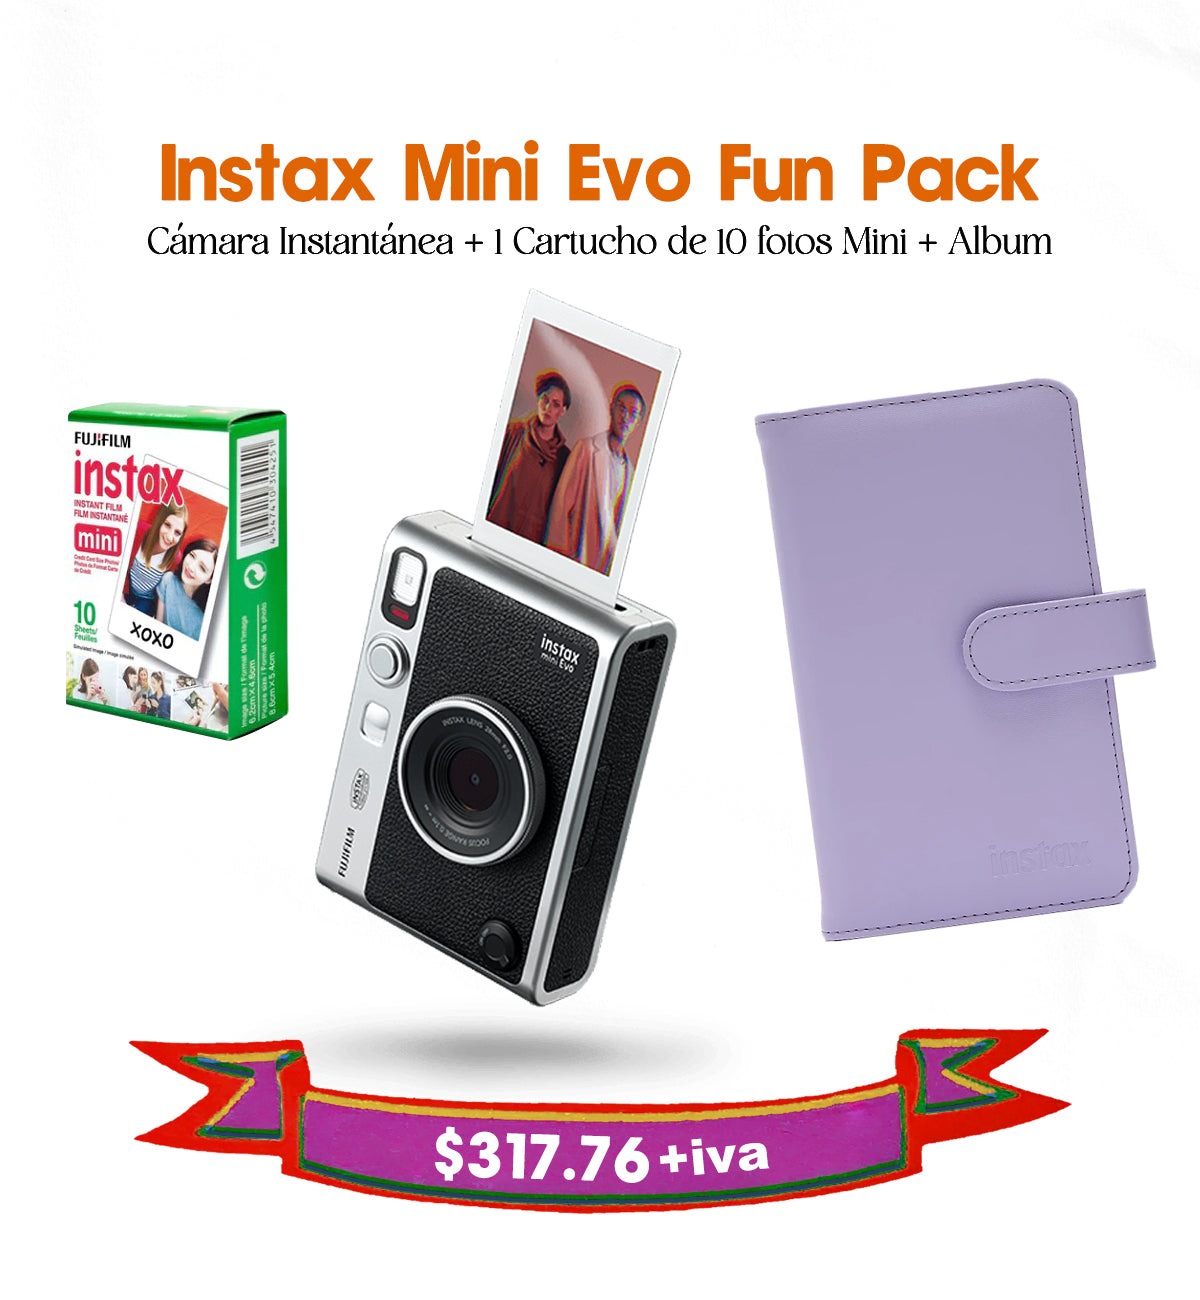 Instax Mini Evo Fun Pack